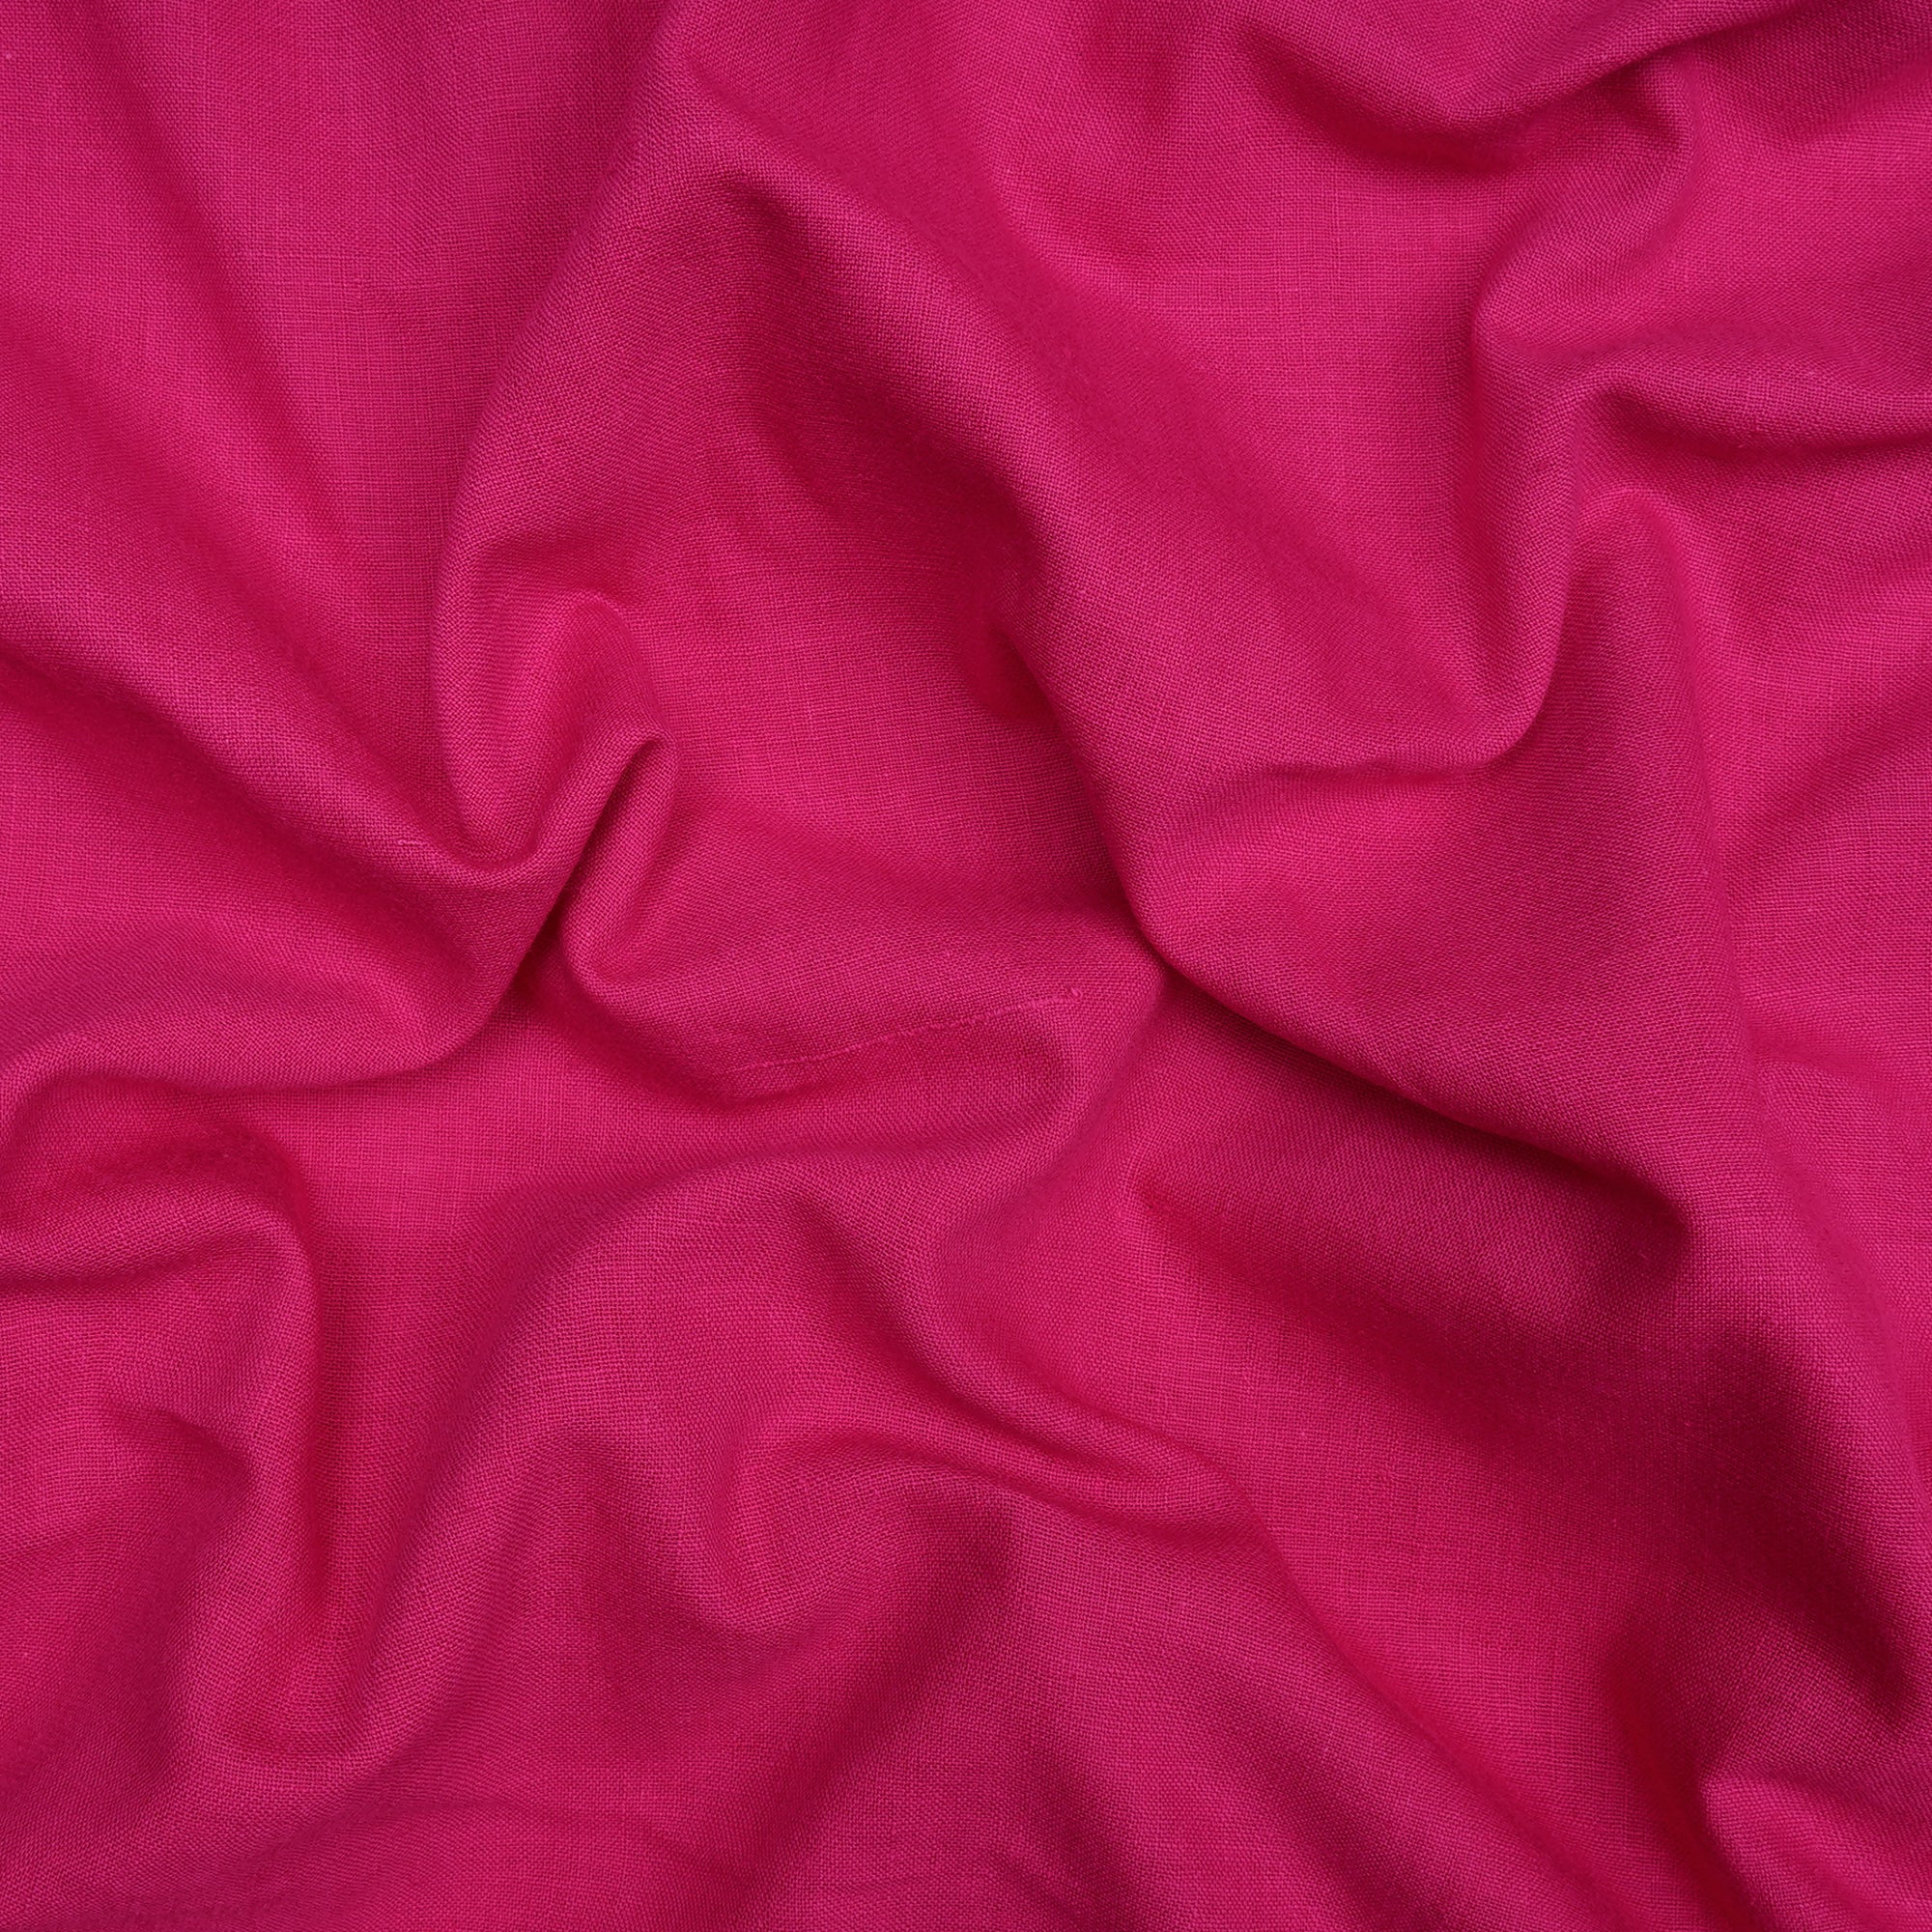 Dark Pink Handwoven Handspun Muslin Cotton Fabric